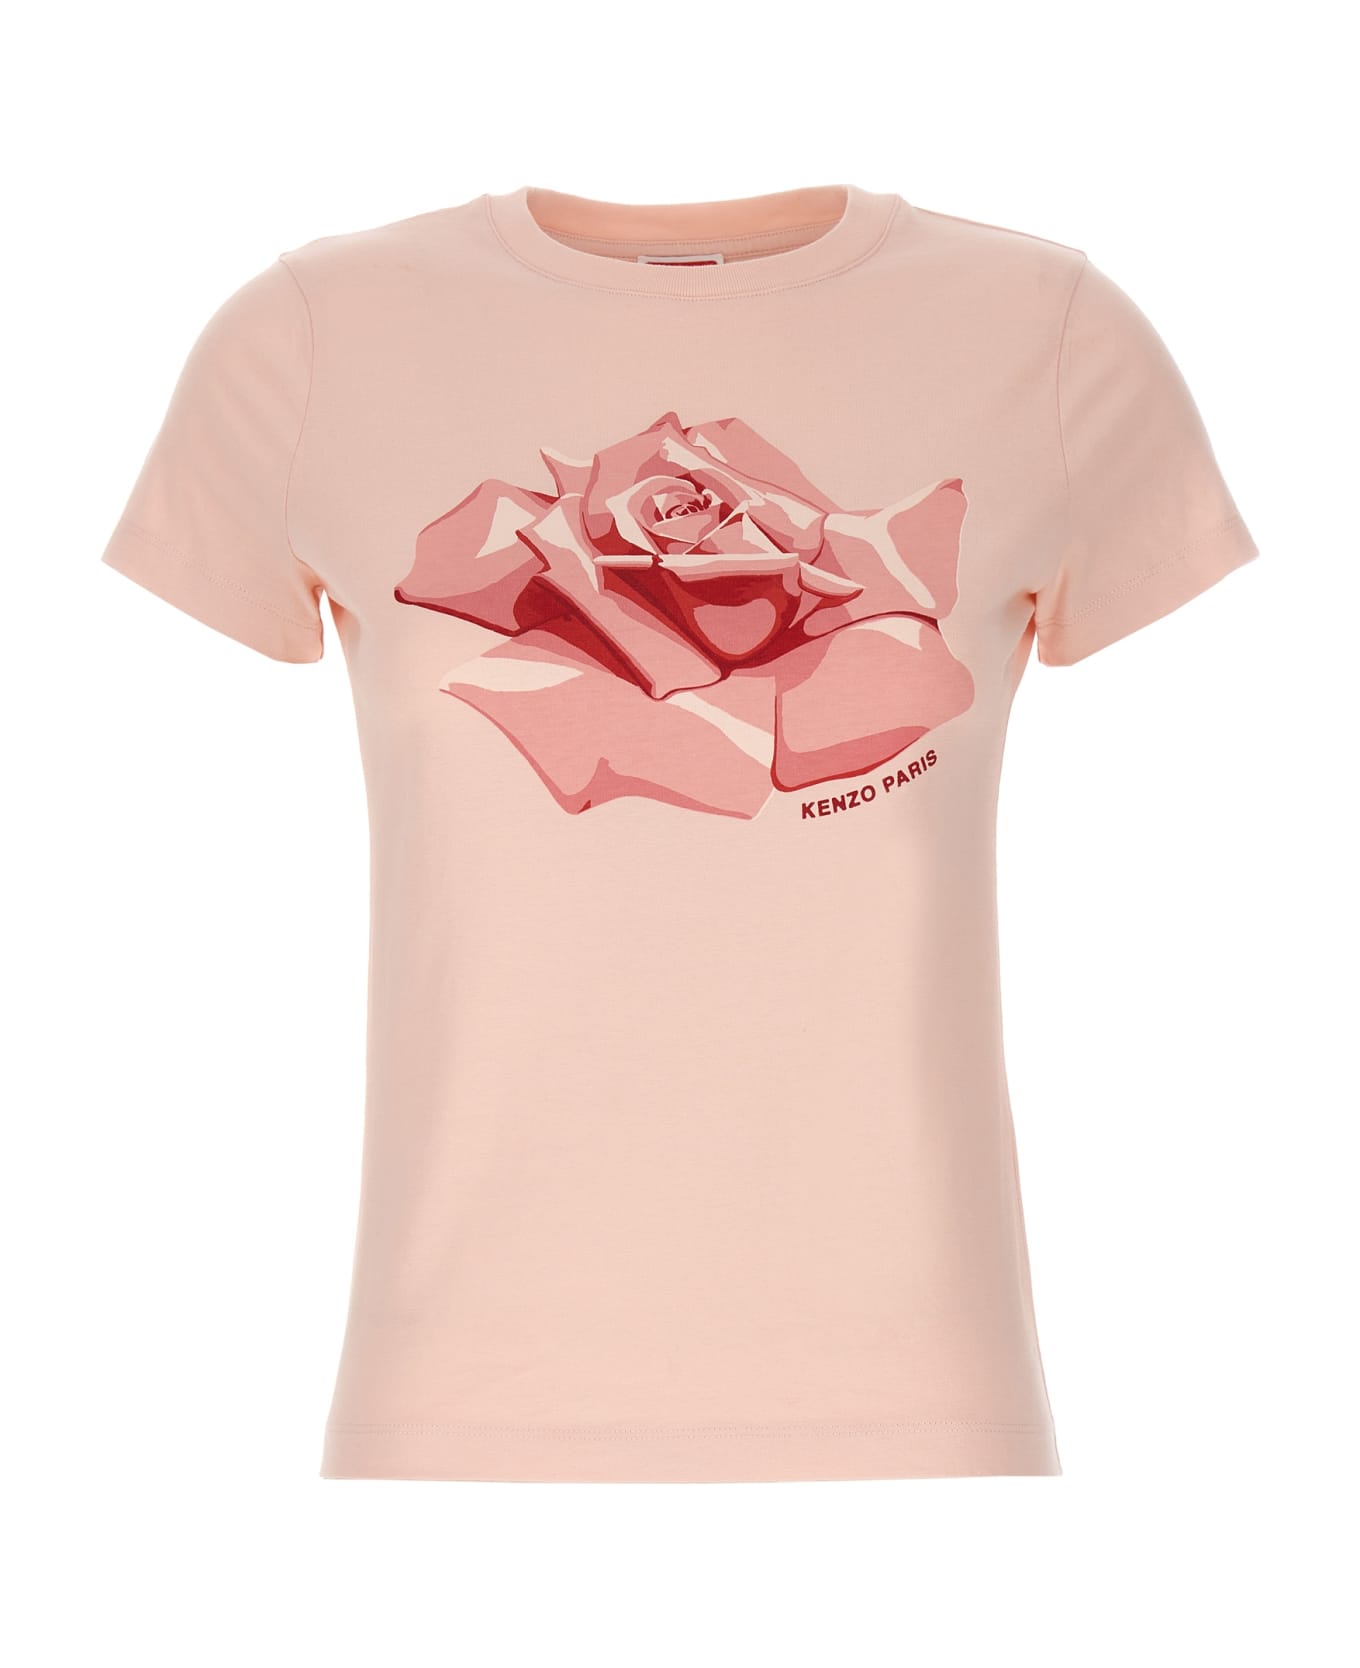 Kenzo Rose T-shirt - Pink Tシャツ